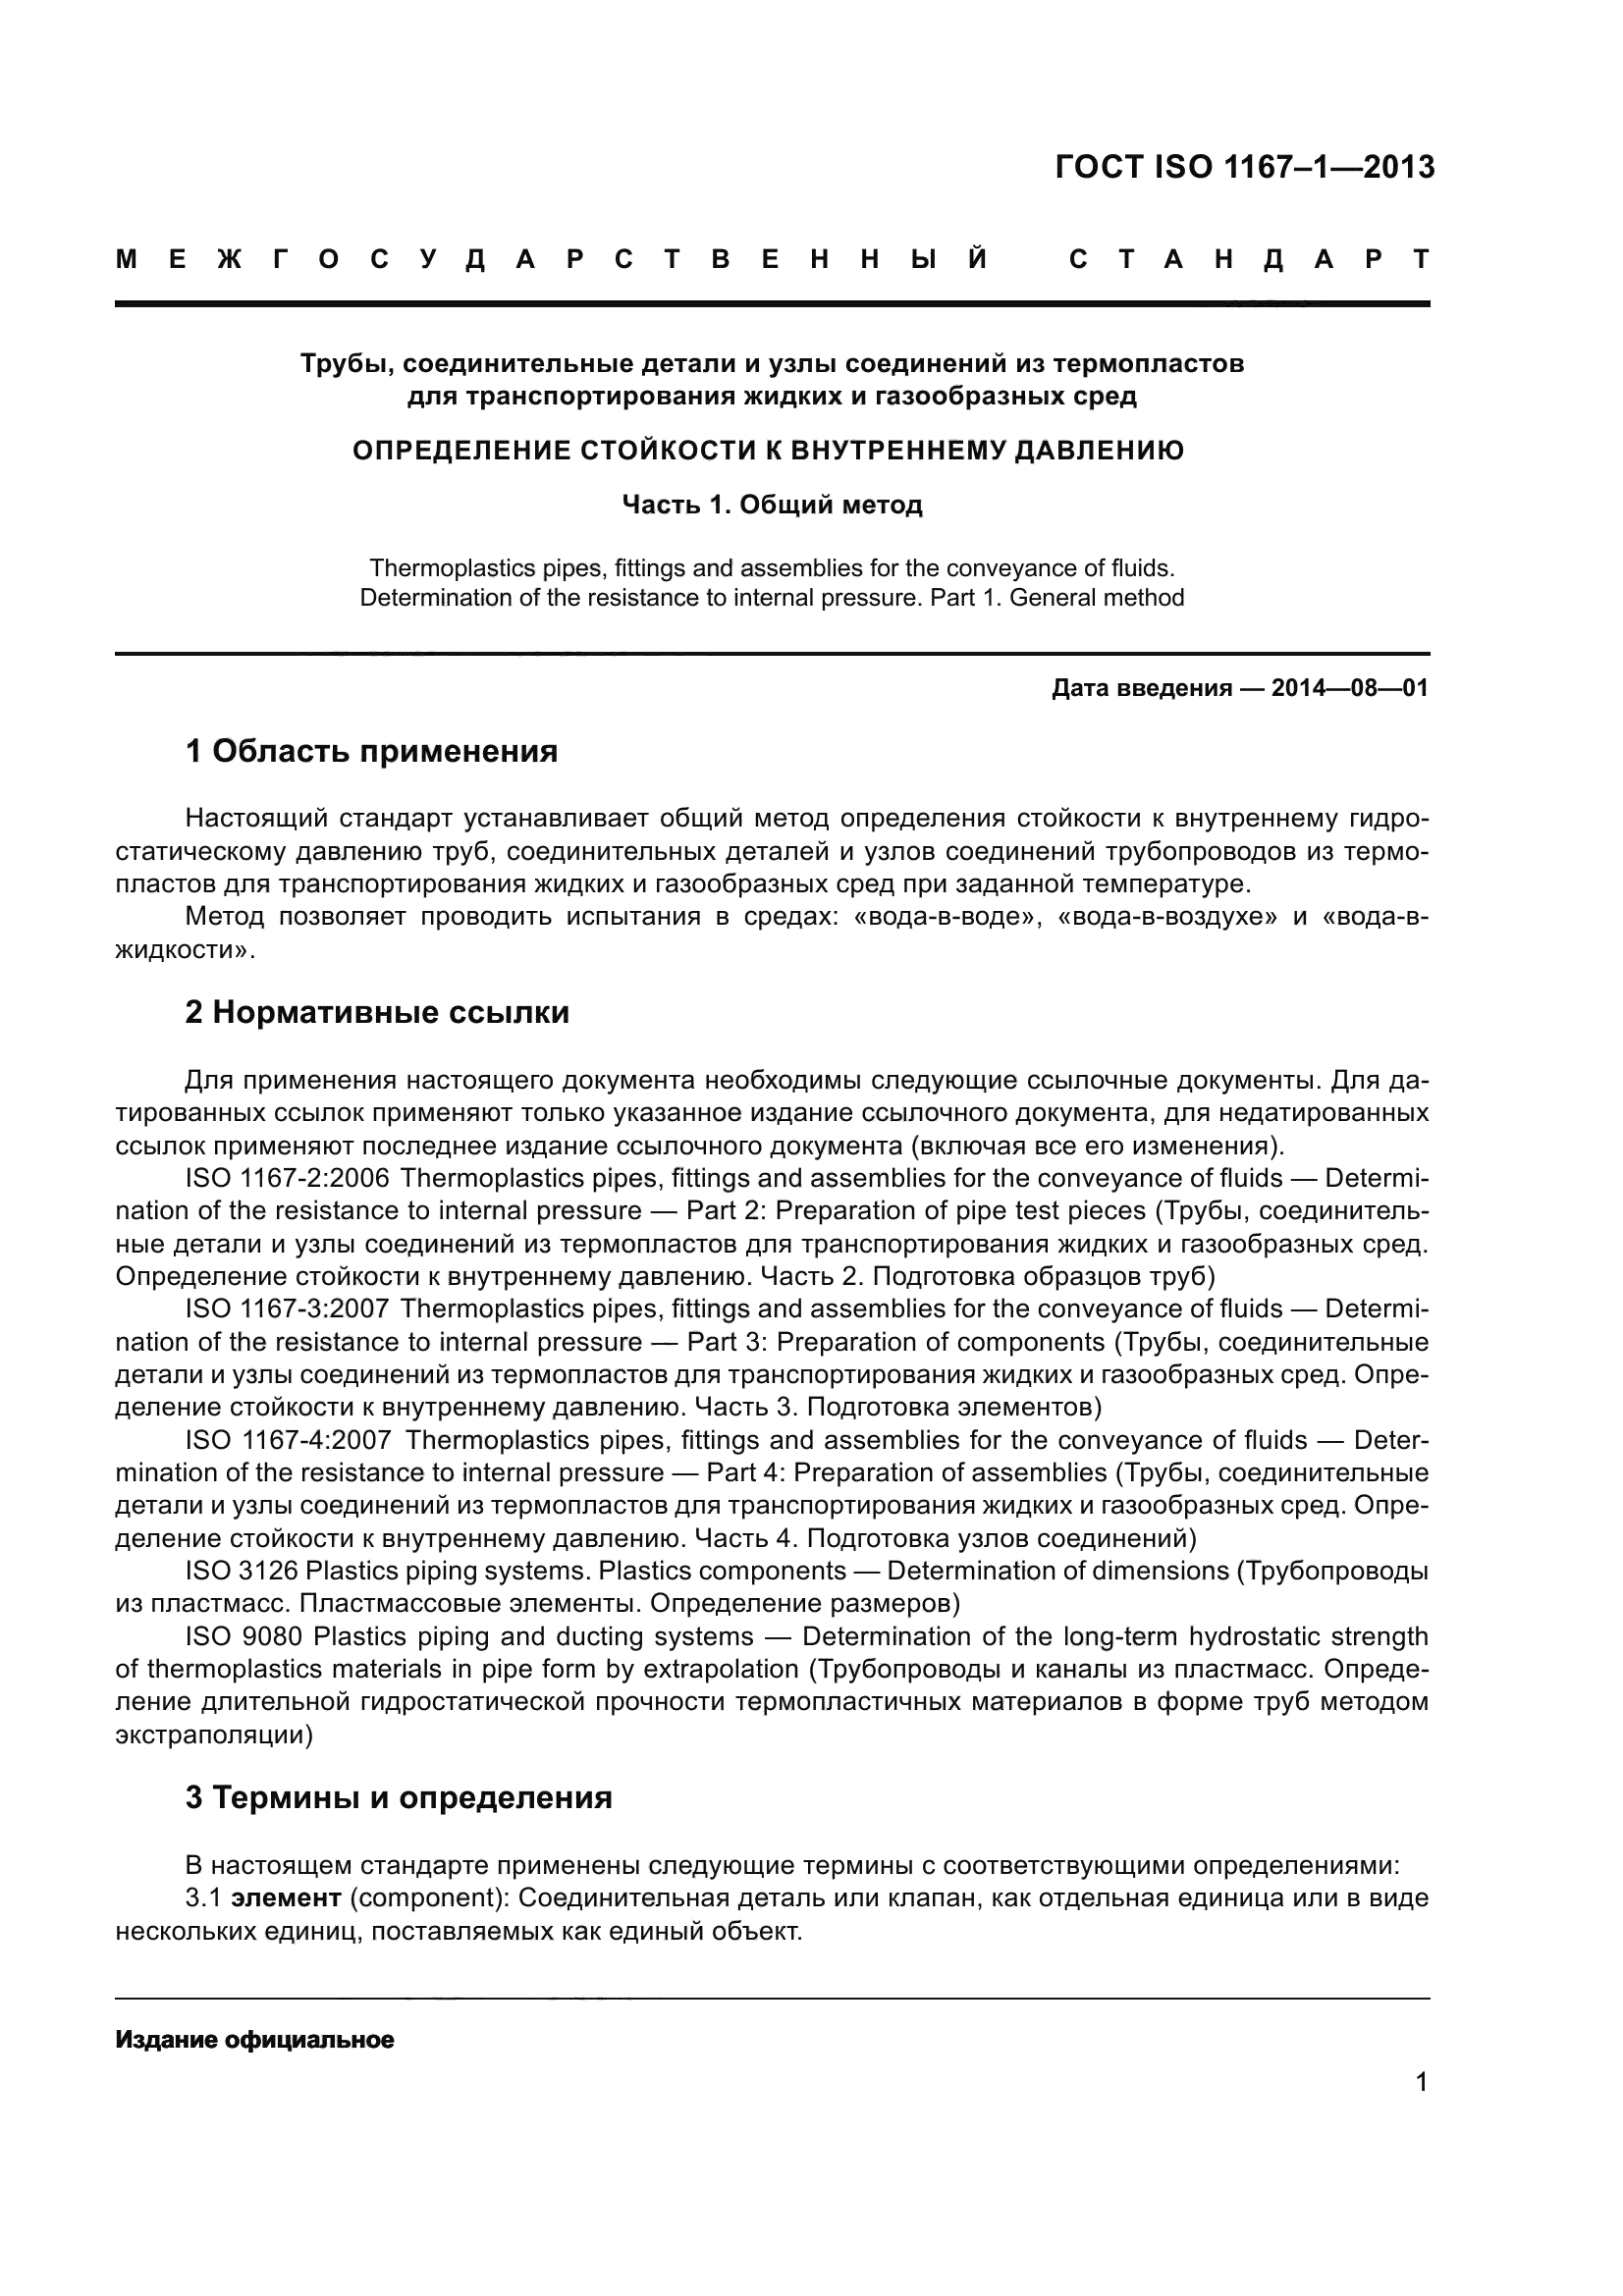 ГОСТ ISO 1167-1-2013